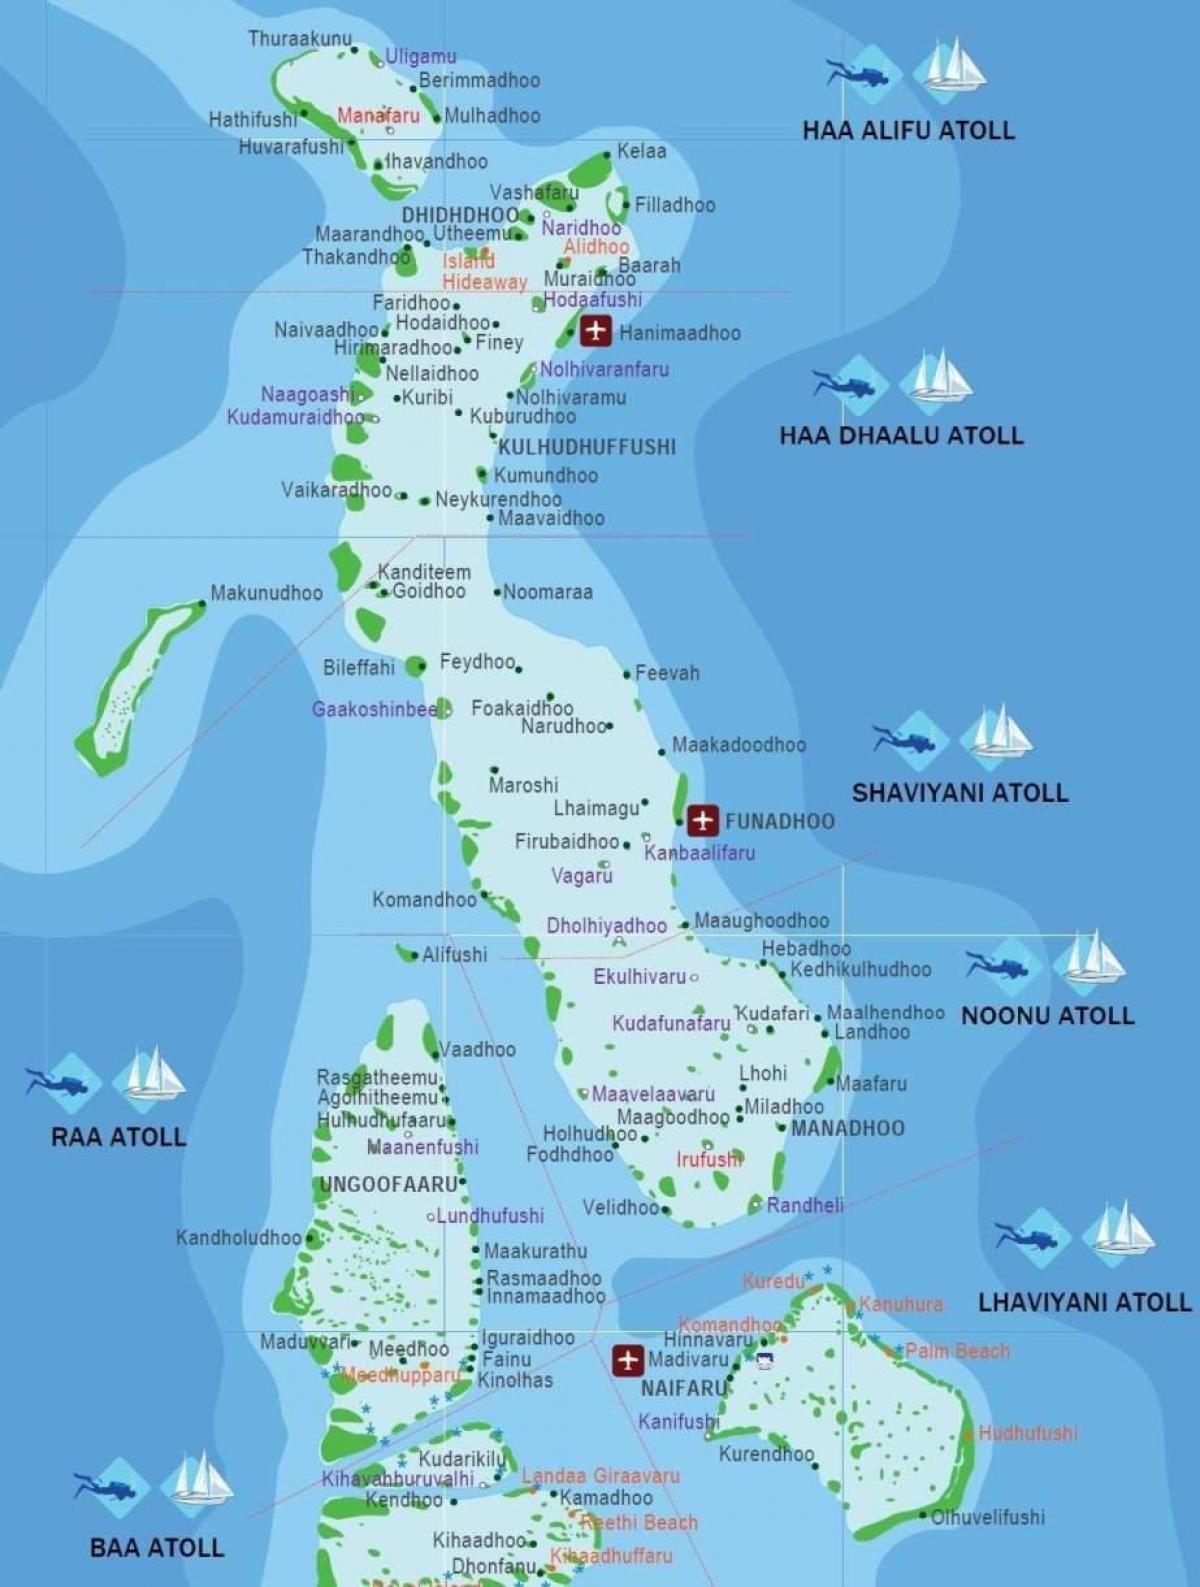 la mappa completa delle maldive